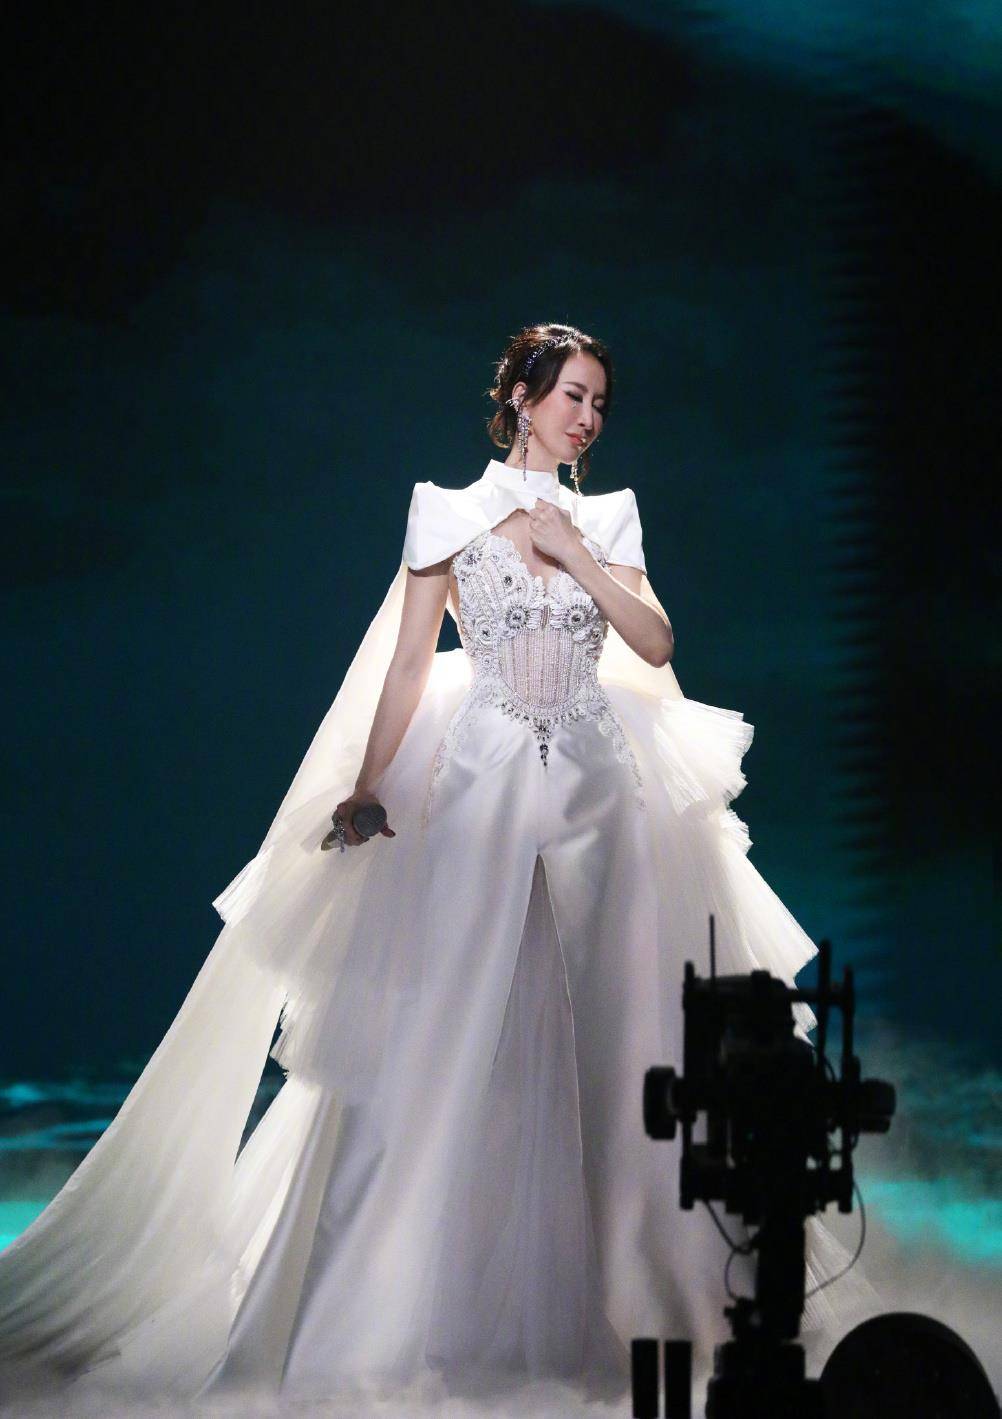 《声生不息》最新一期 李玟复制经典 穿婚纱演唱《天若有情》